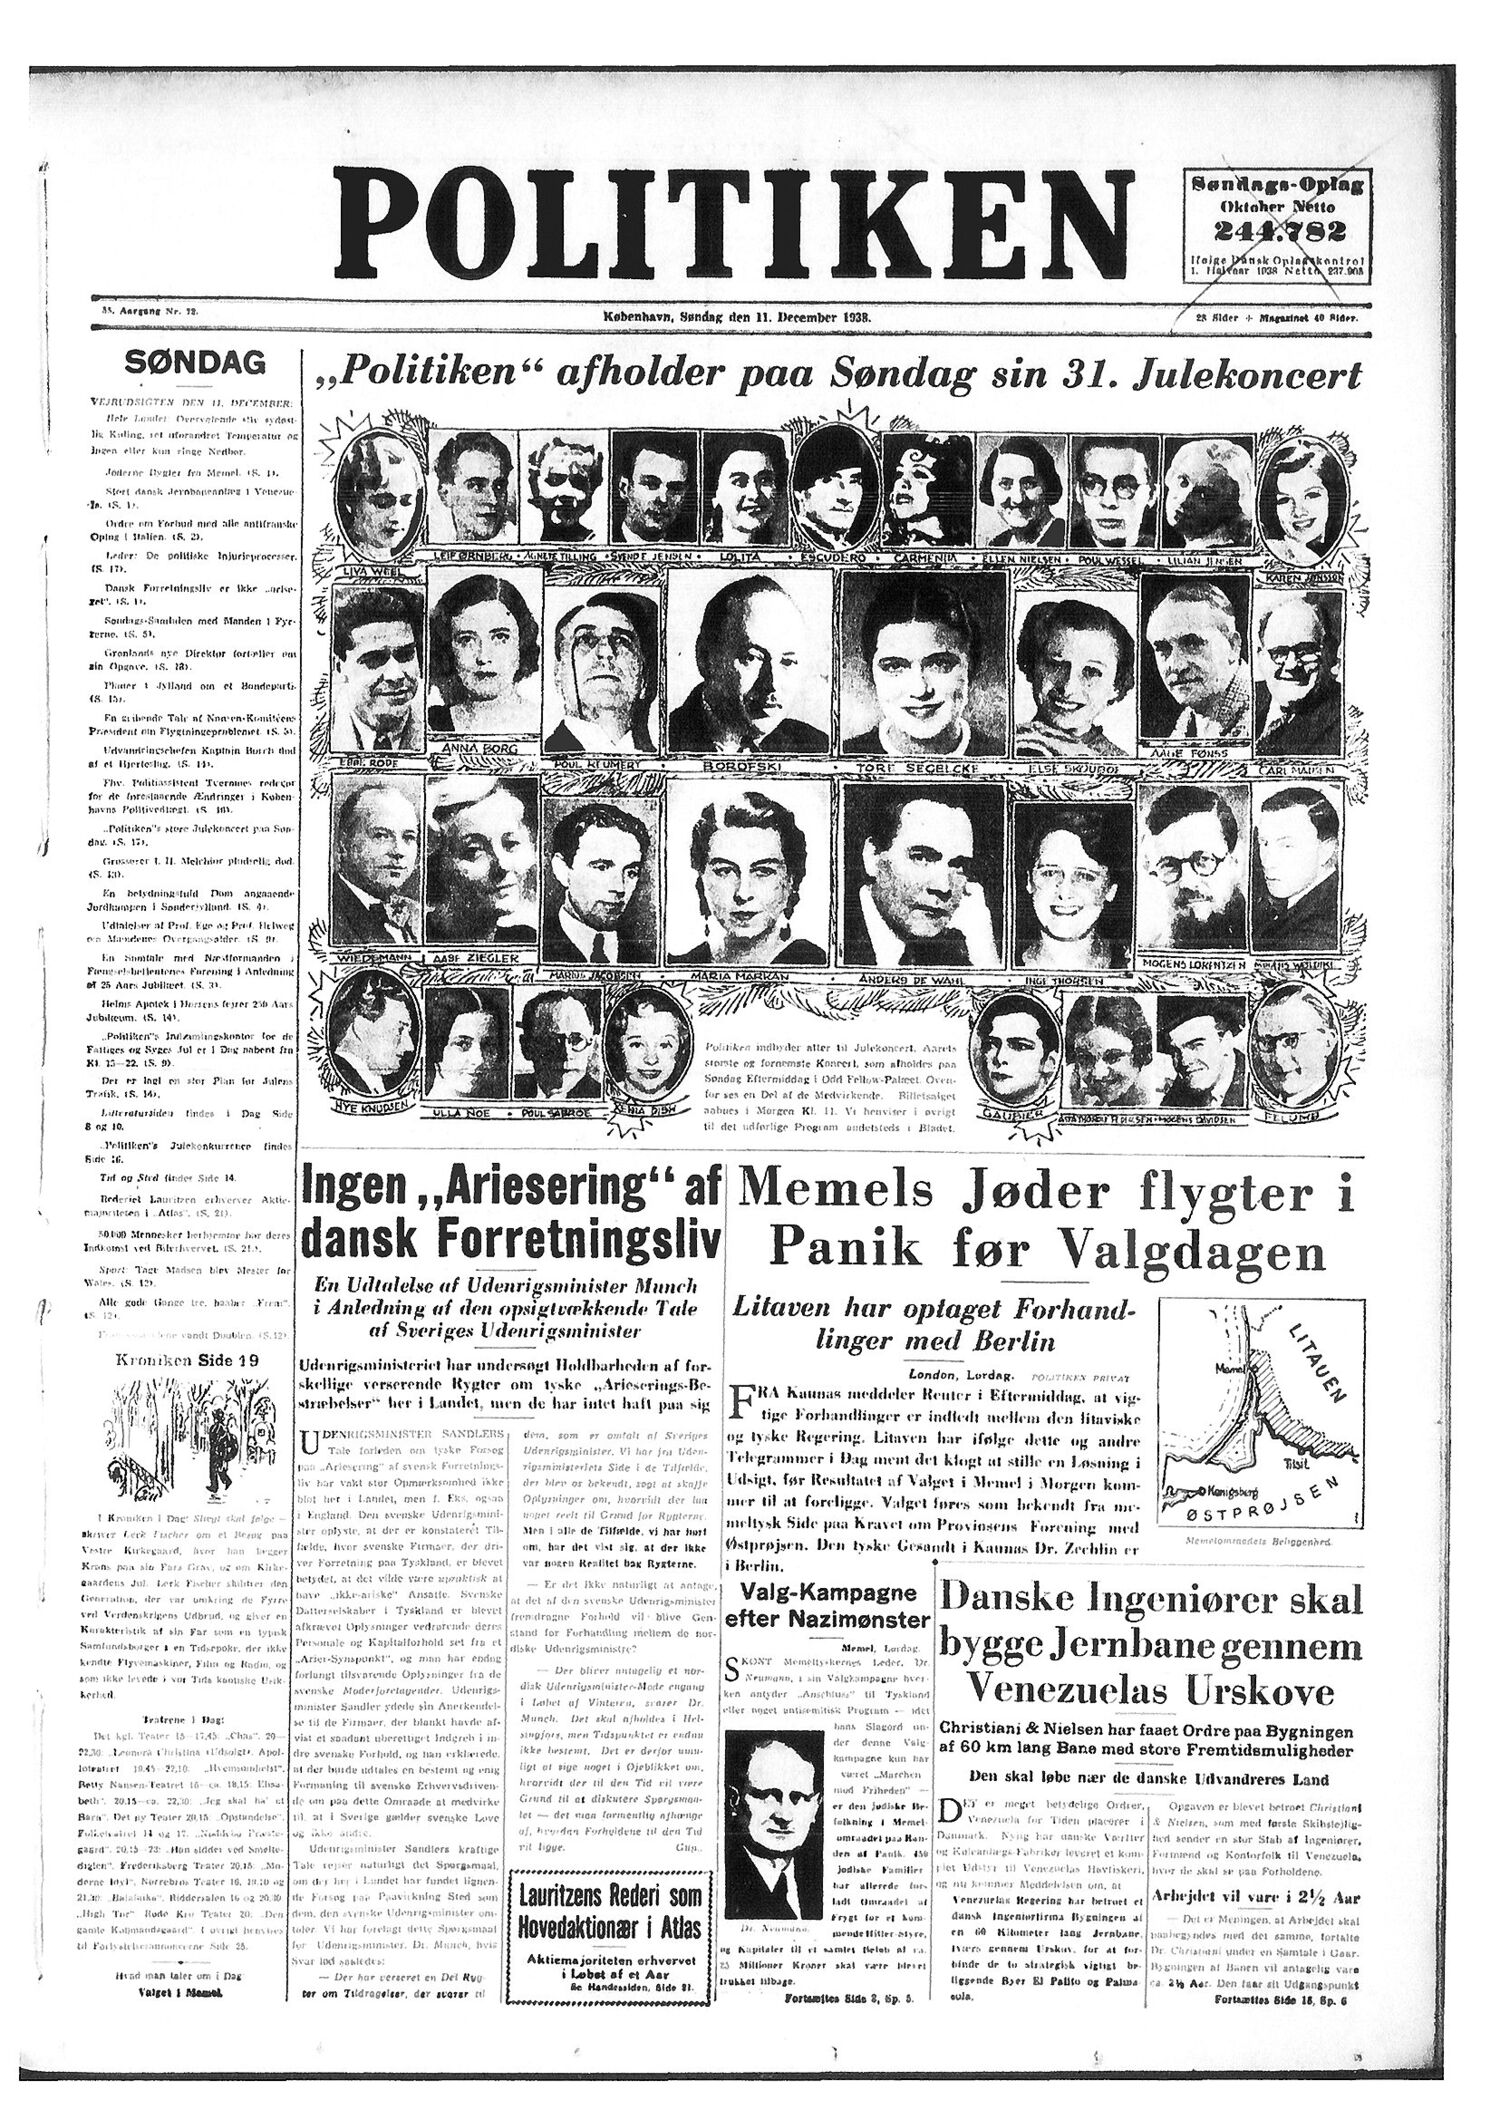 Forsiden af Politiken 11. december 1938, hvor udenrigsminister Peter Munch afviser, at tyskerne skulle forsøge at udrense jøder fra dansk erhvervsliv.